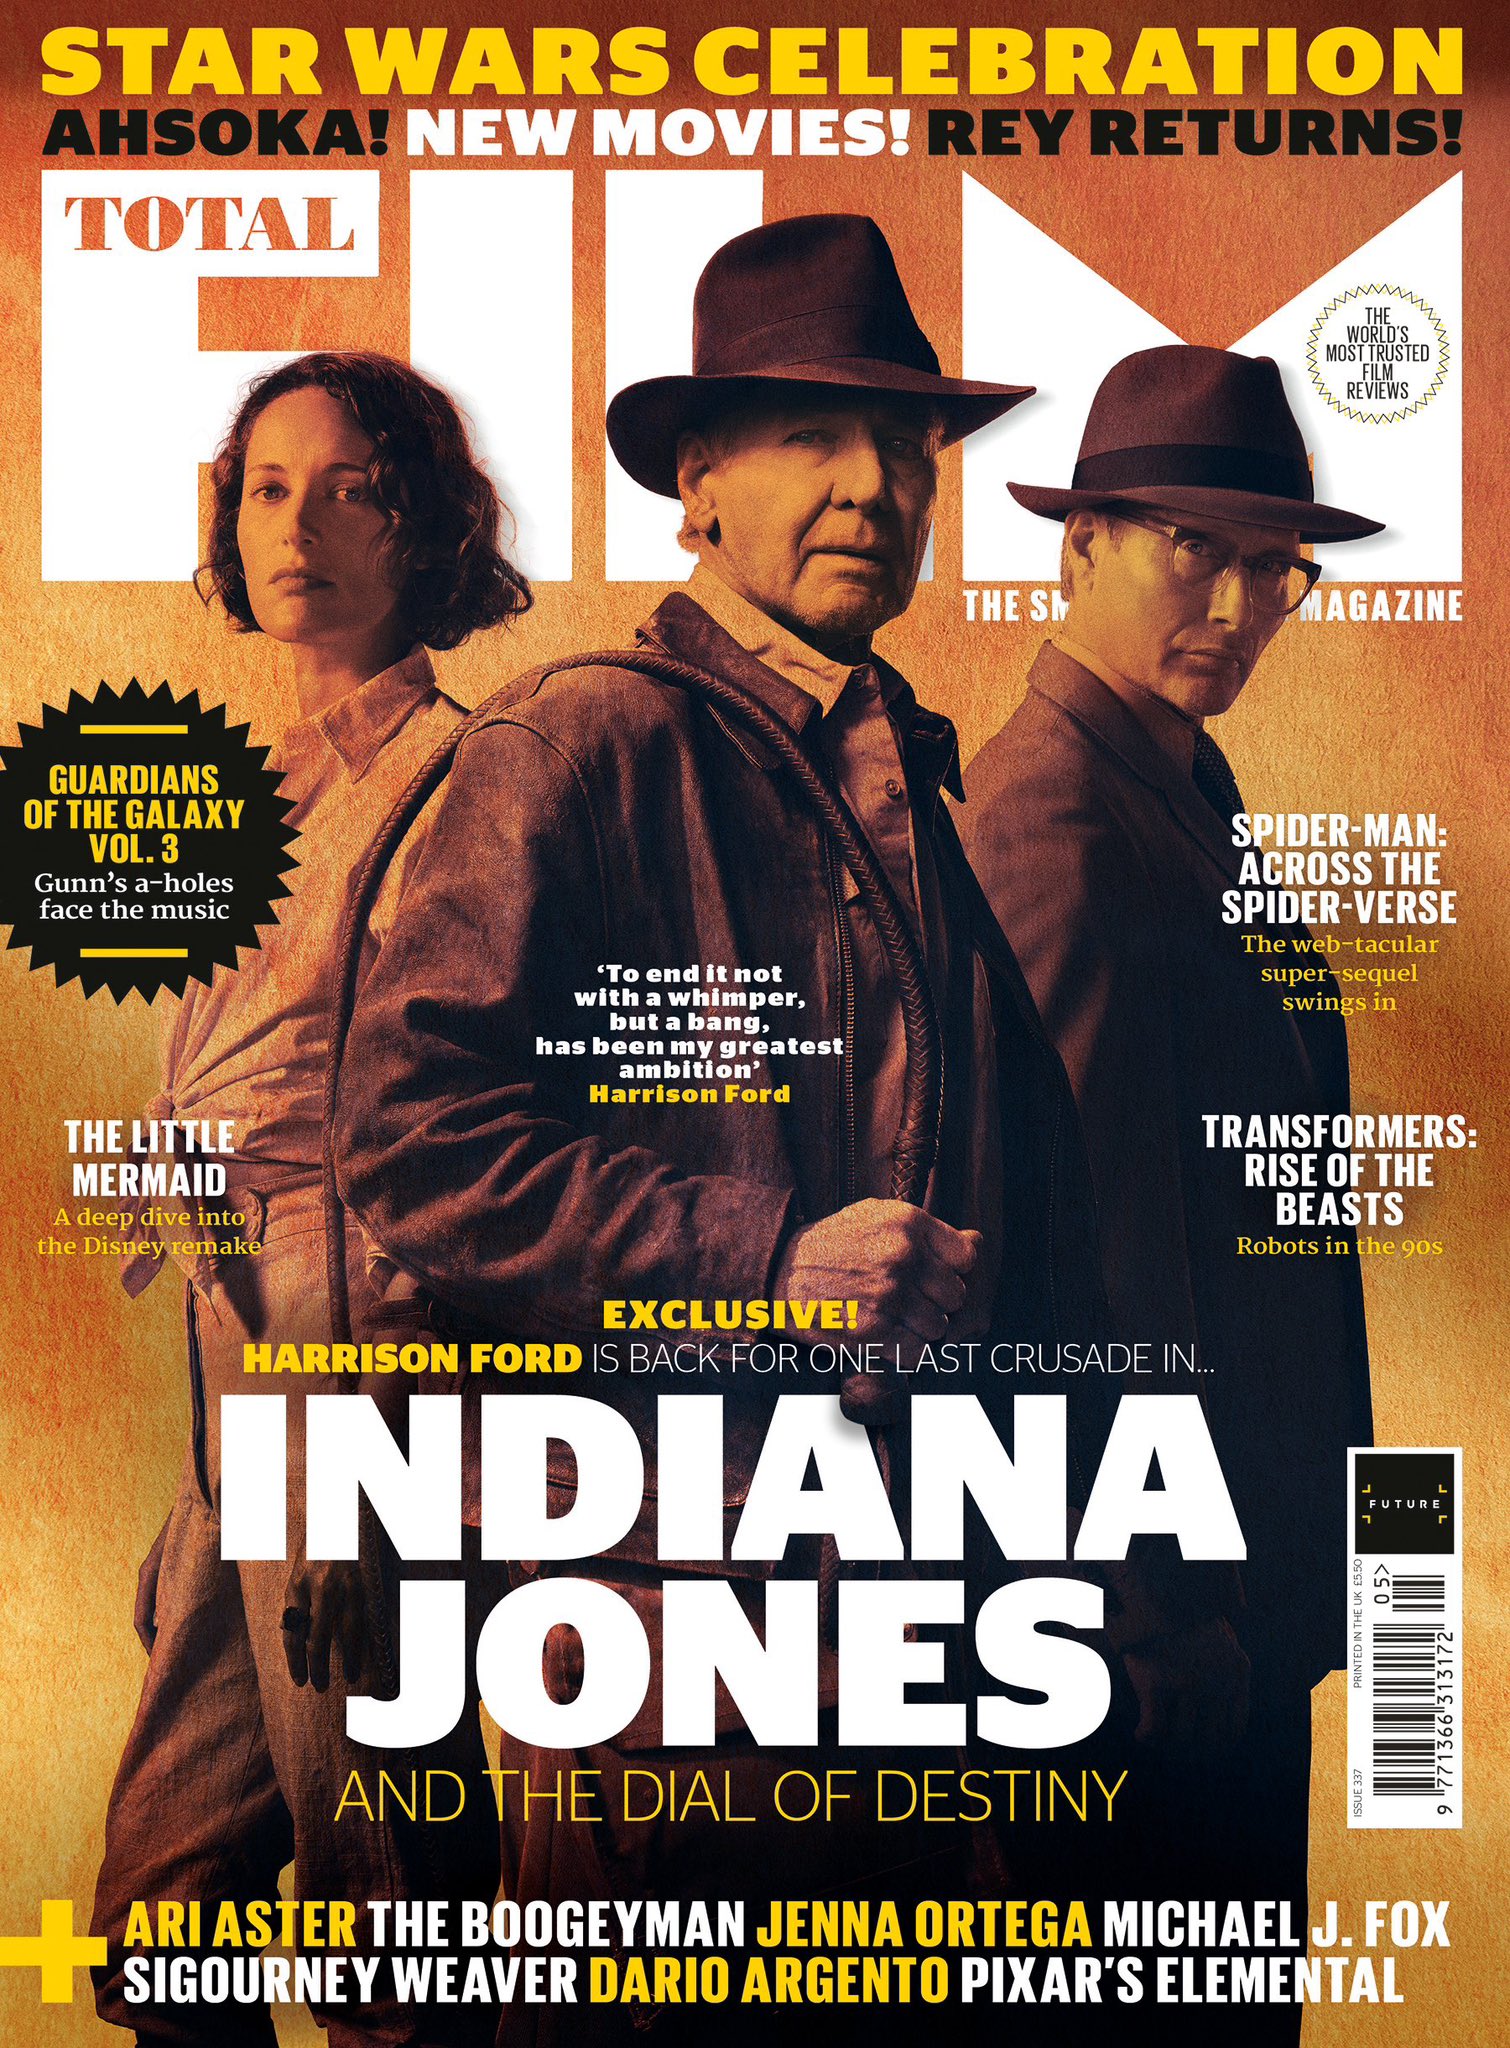 Indiana Jones se aposenta em grande estilo com A relíquia do destino -  Cultura - Estado de Minas